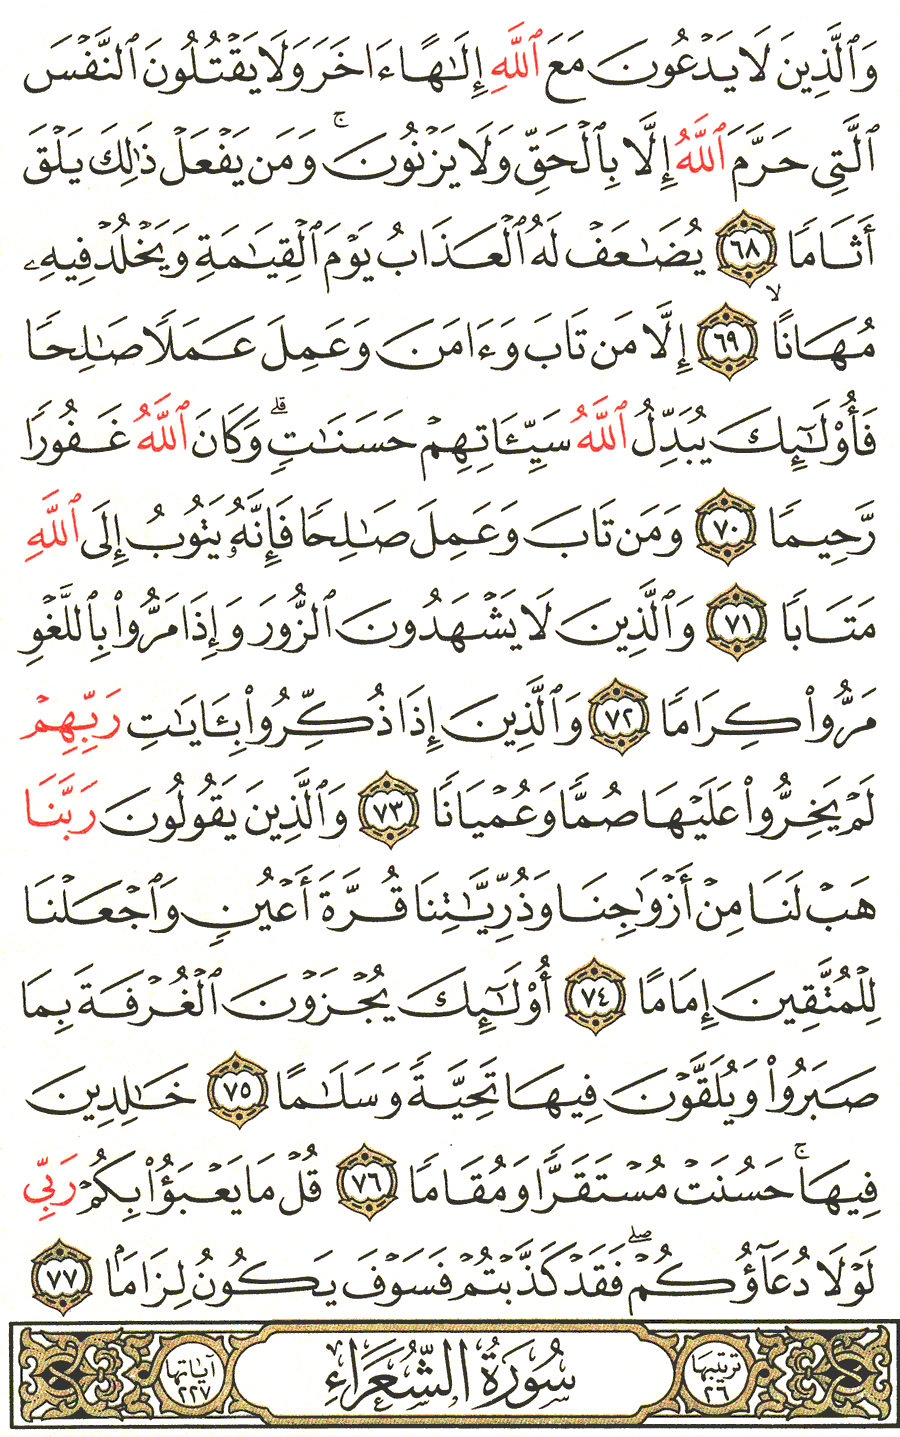 الصفحة رقم 366  من القرآن الكريم مكتوبة من المصحف